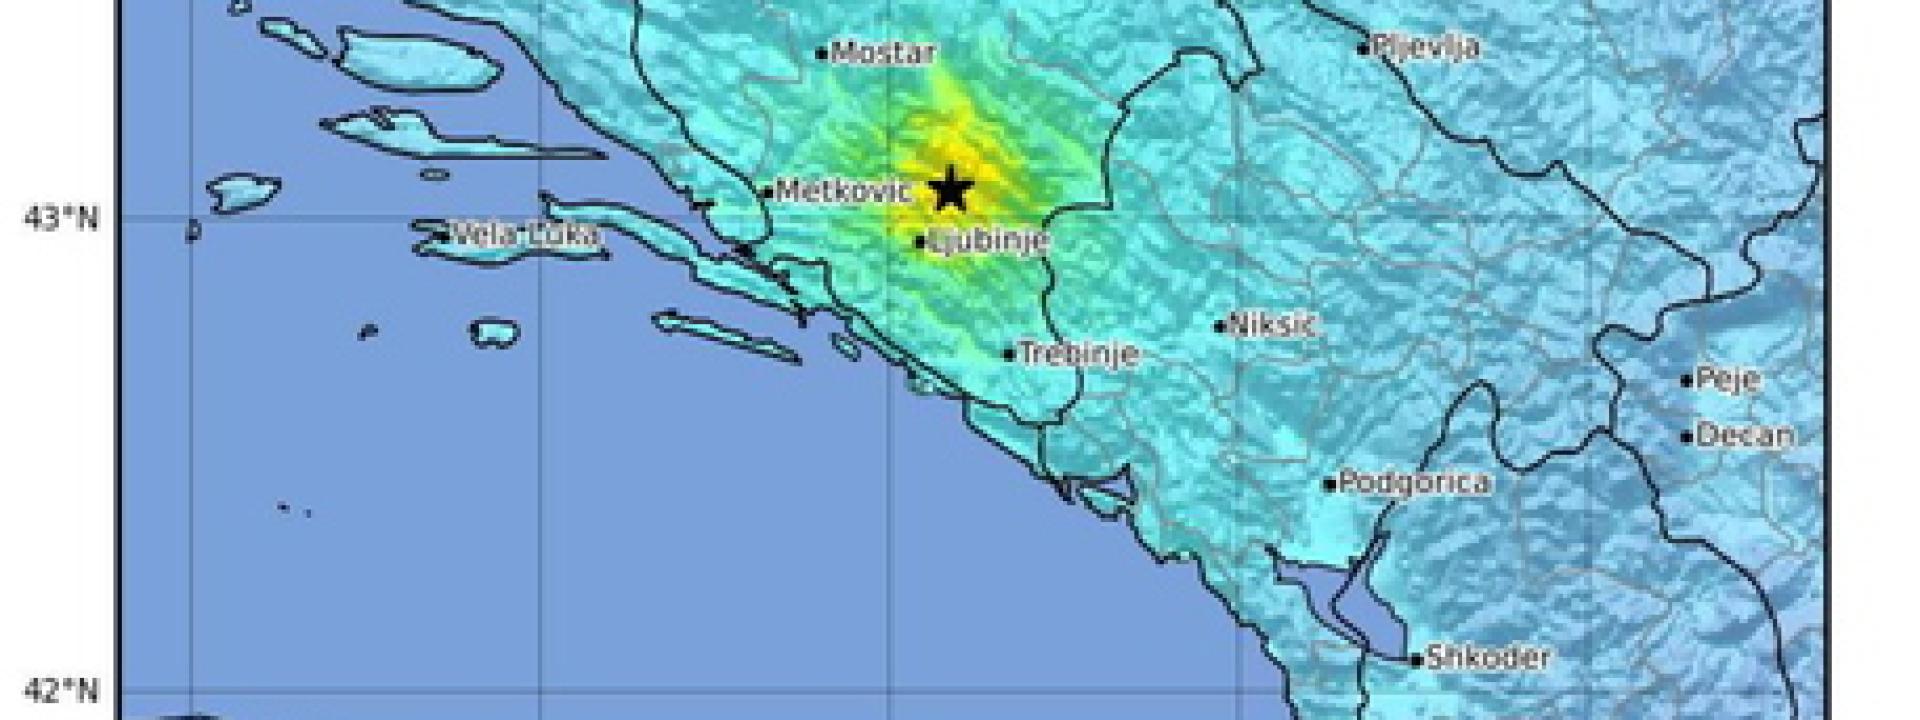 Nuova forte scossa di terremoto questa mattina in Bosnia